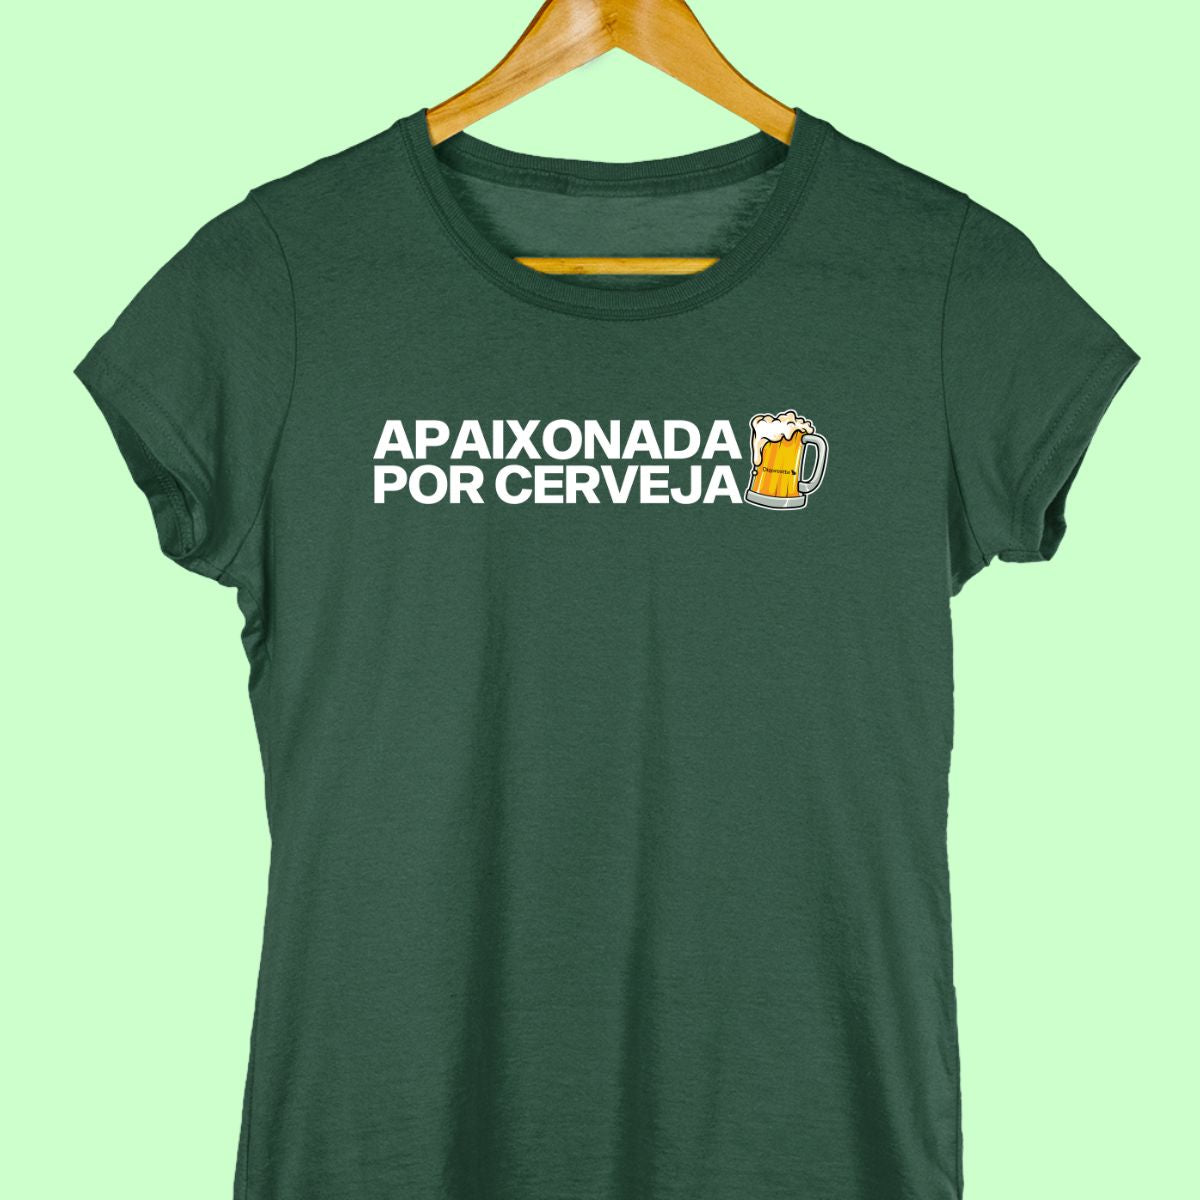 Camiseta de casal com a frase "apaixonada por cerveja." feminina verde.